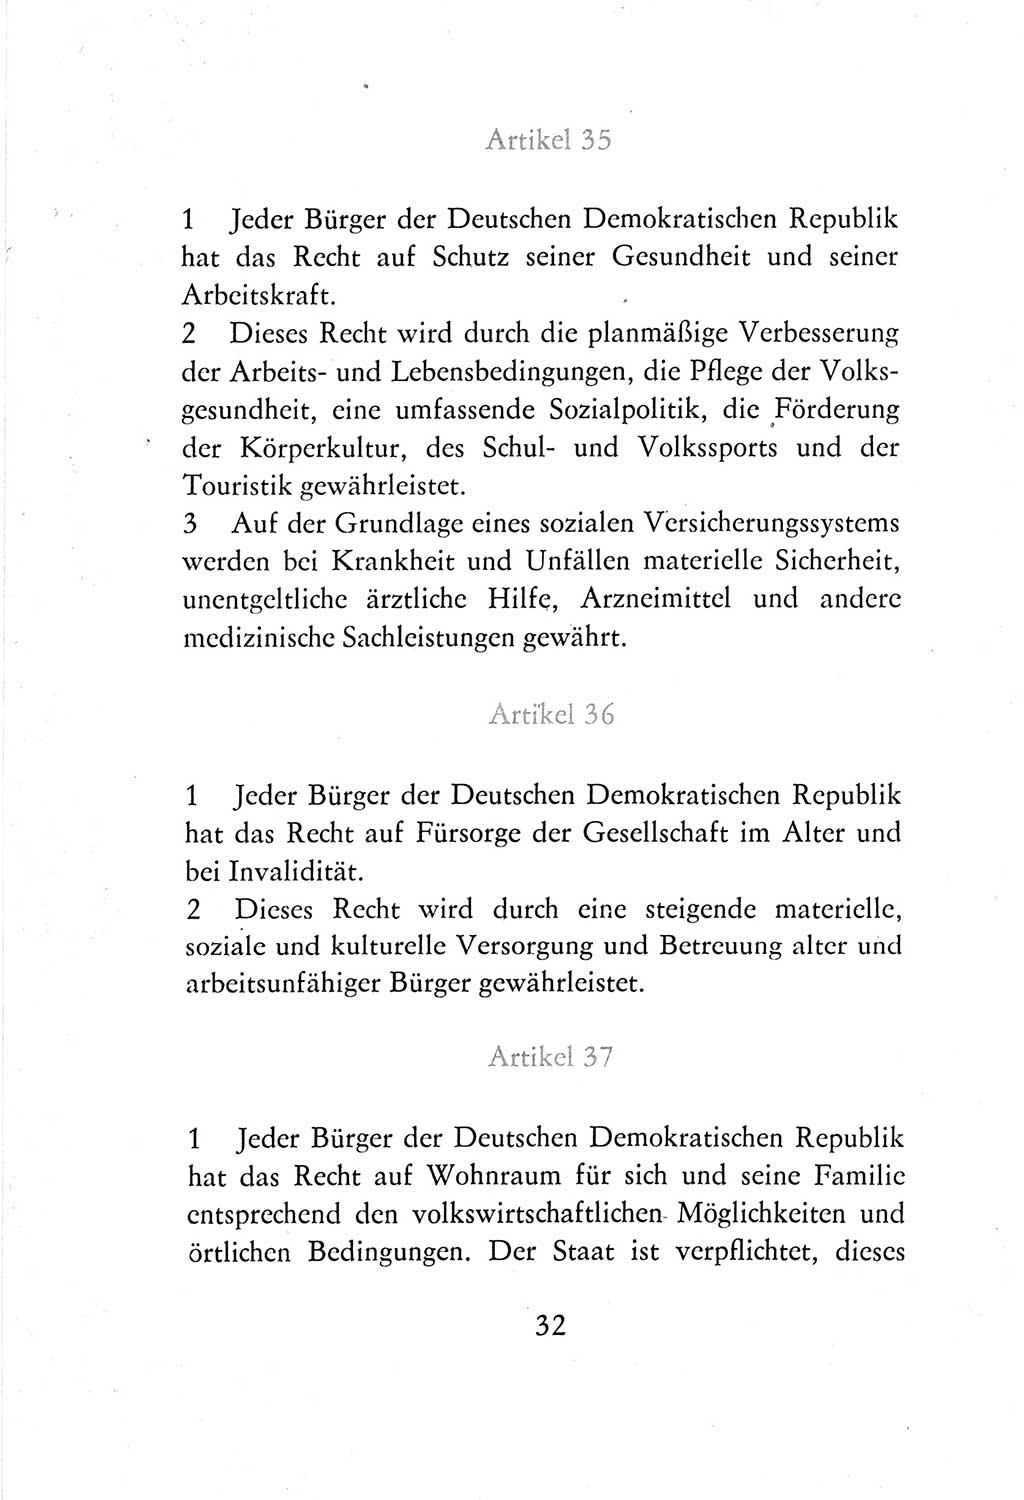 Verfassung der Deutschen Demokratischen Republik (DDR) vom 7. Oktober 1974, Seite 32 (Verf. DDR 1974, S. 32)